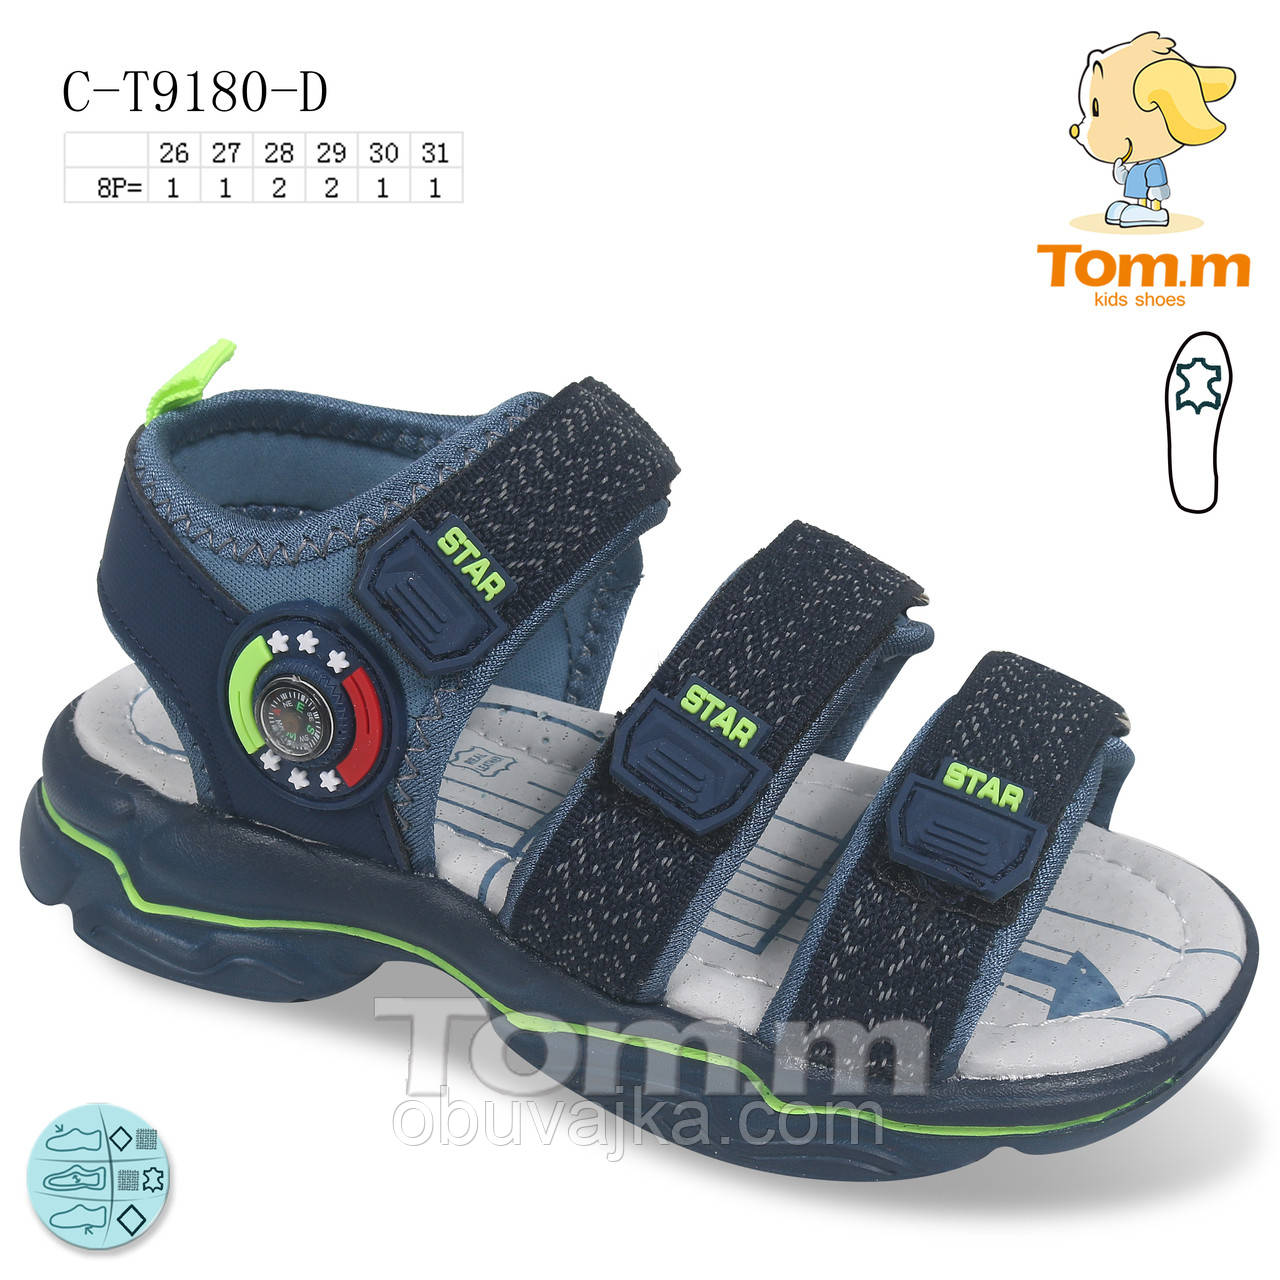 Дитяче літнє взуття 2021 оптом. Дитячі босоніжки бренду Tom m для хлопчиків (рр. з 26 по 31)